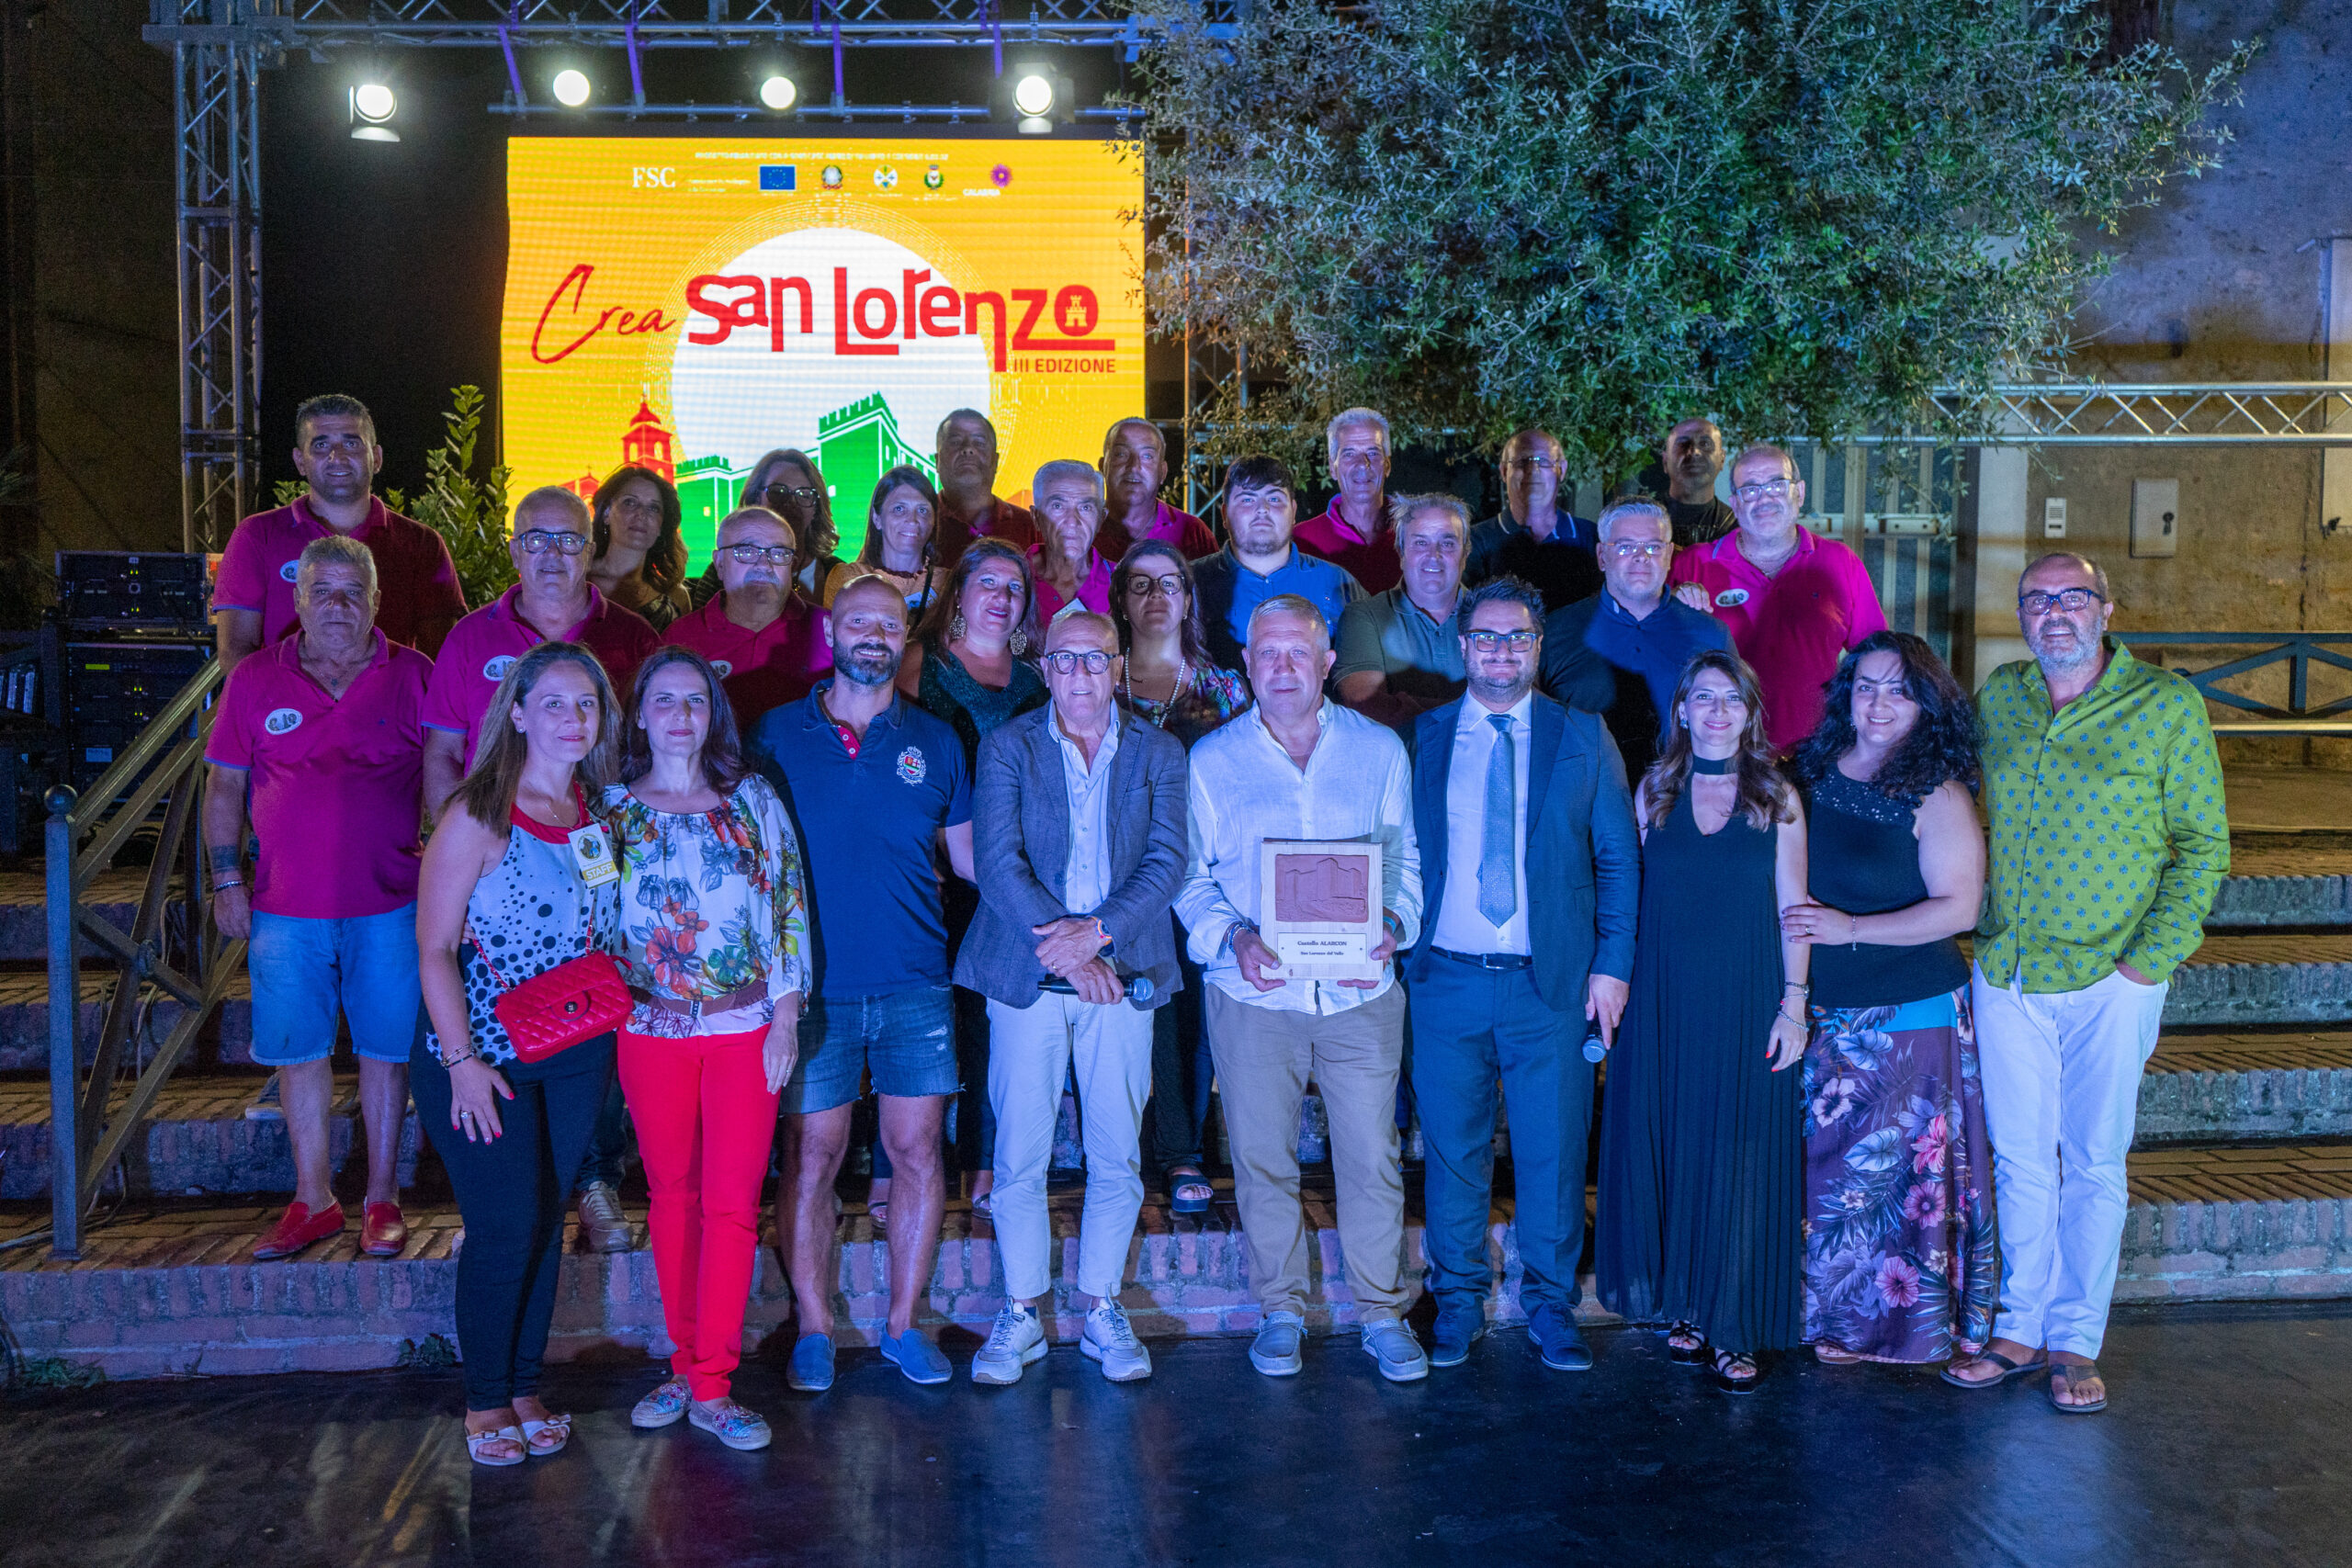 Crea San Lorenzo, progetto multidisciplinare giunto alla terza edizione